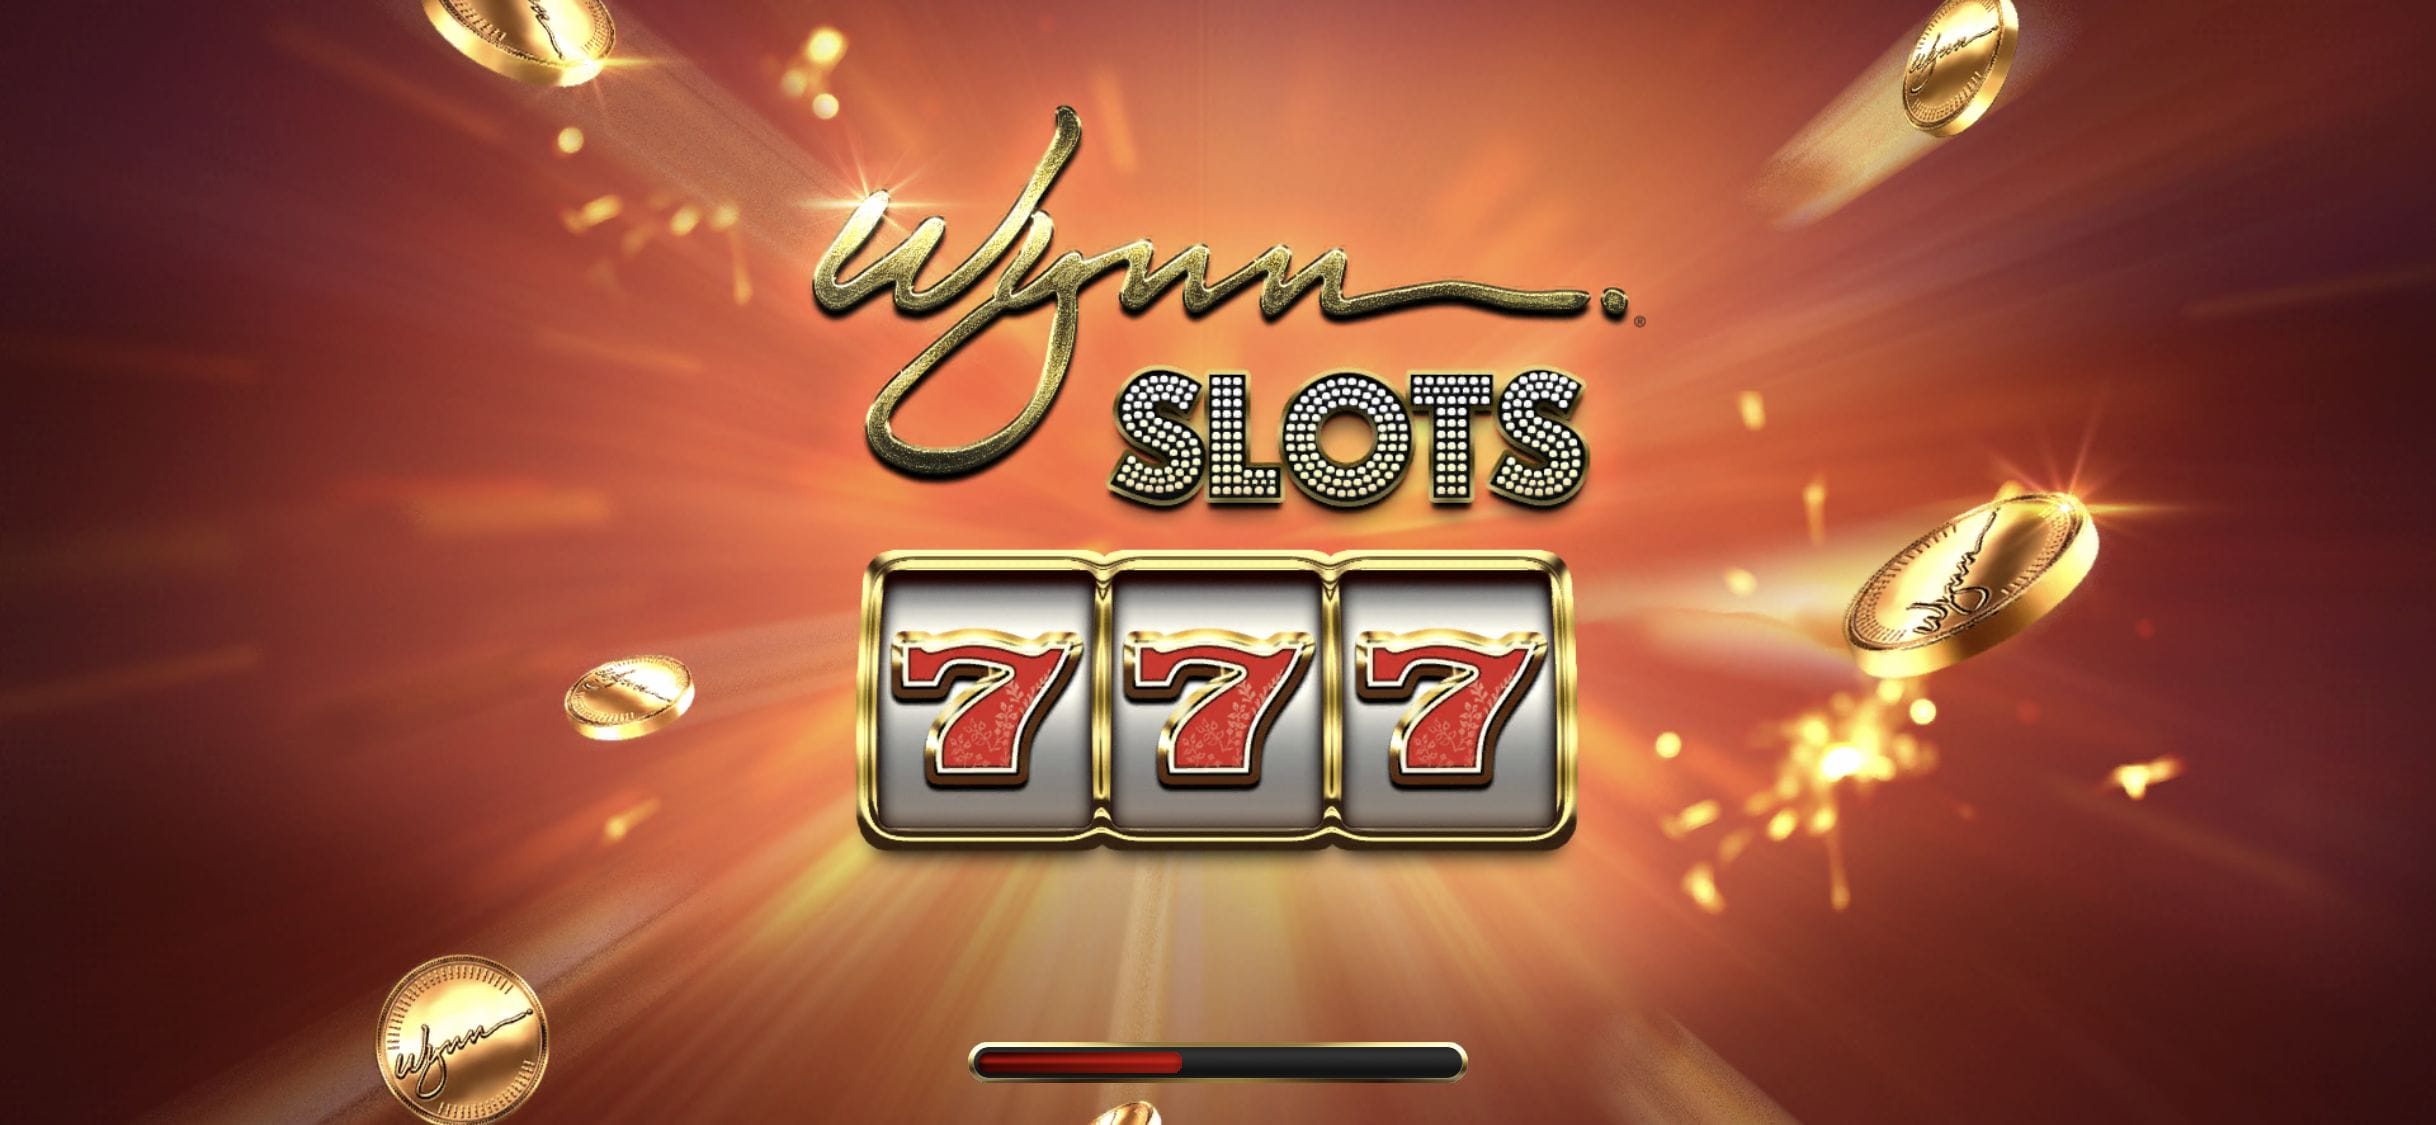 wynn encore boston casino slot machines